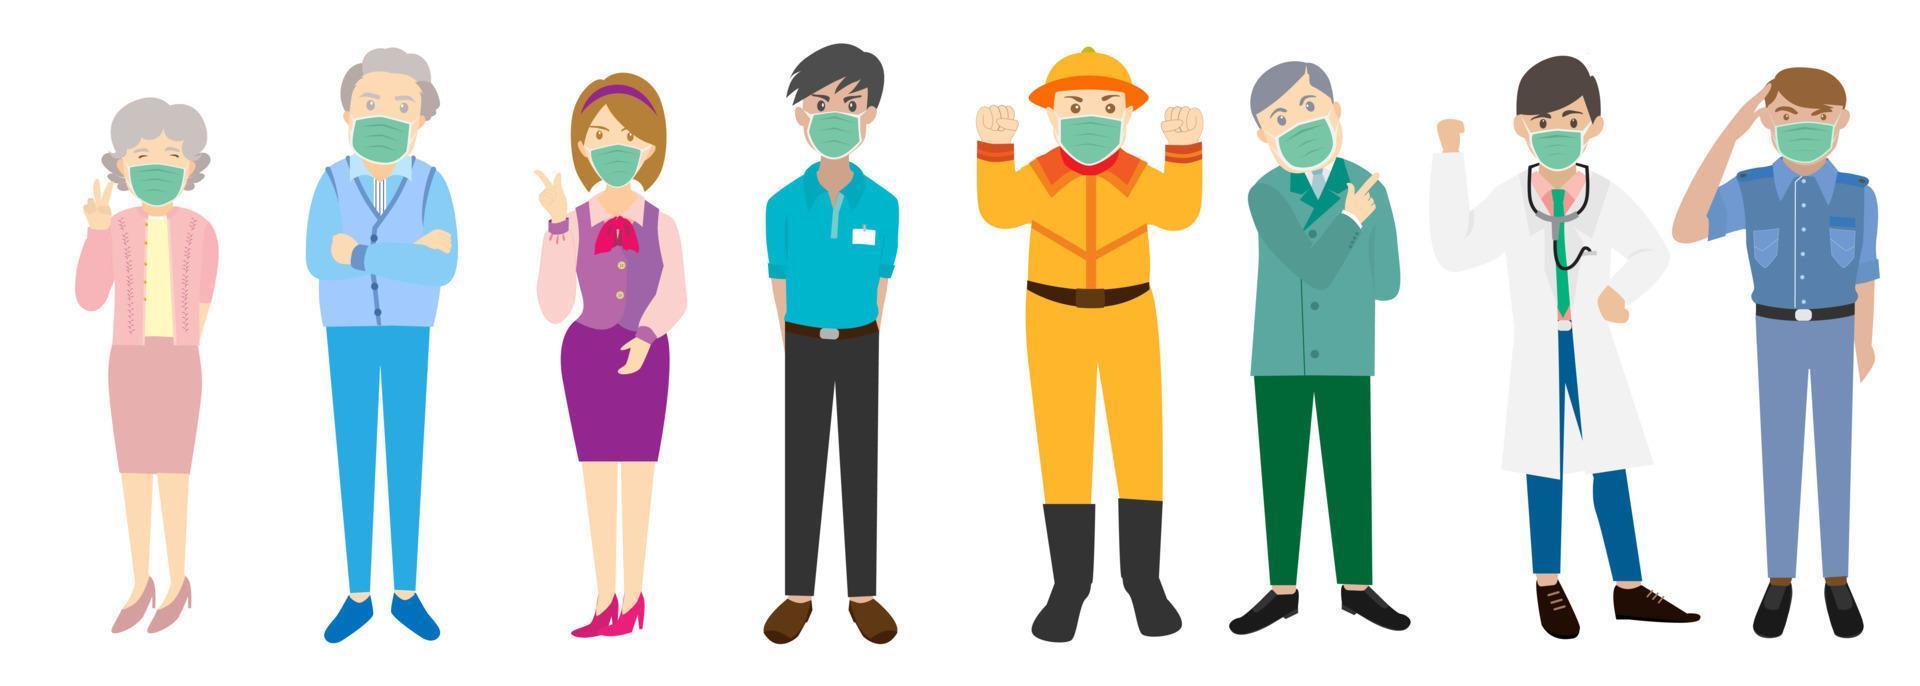 vectorillustratie van mensen van verschillende beroepen en leeftijden die maskers dragen om te beschermen tegen het coronavirus, griep, luchtvervuiling. vector